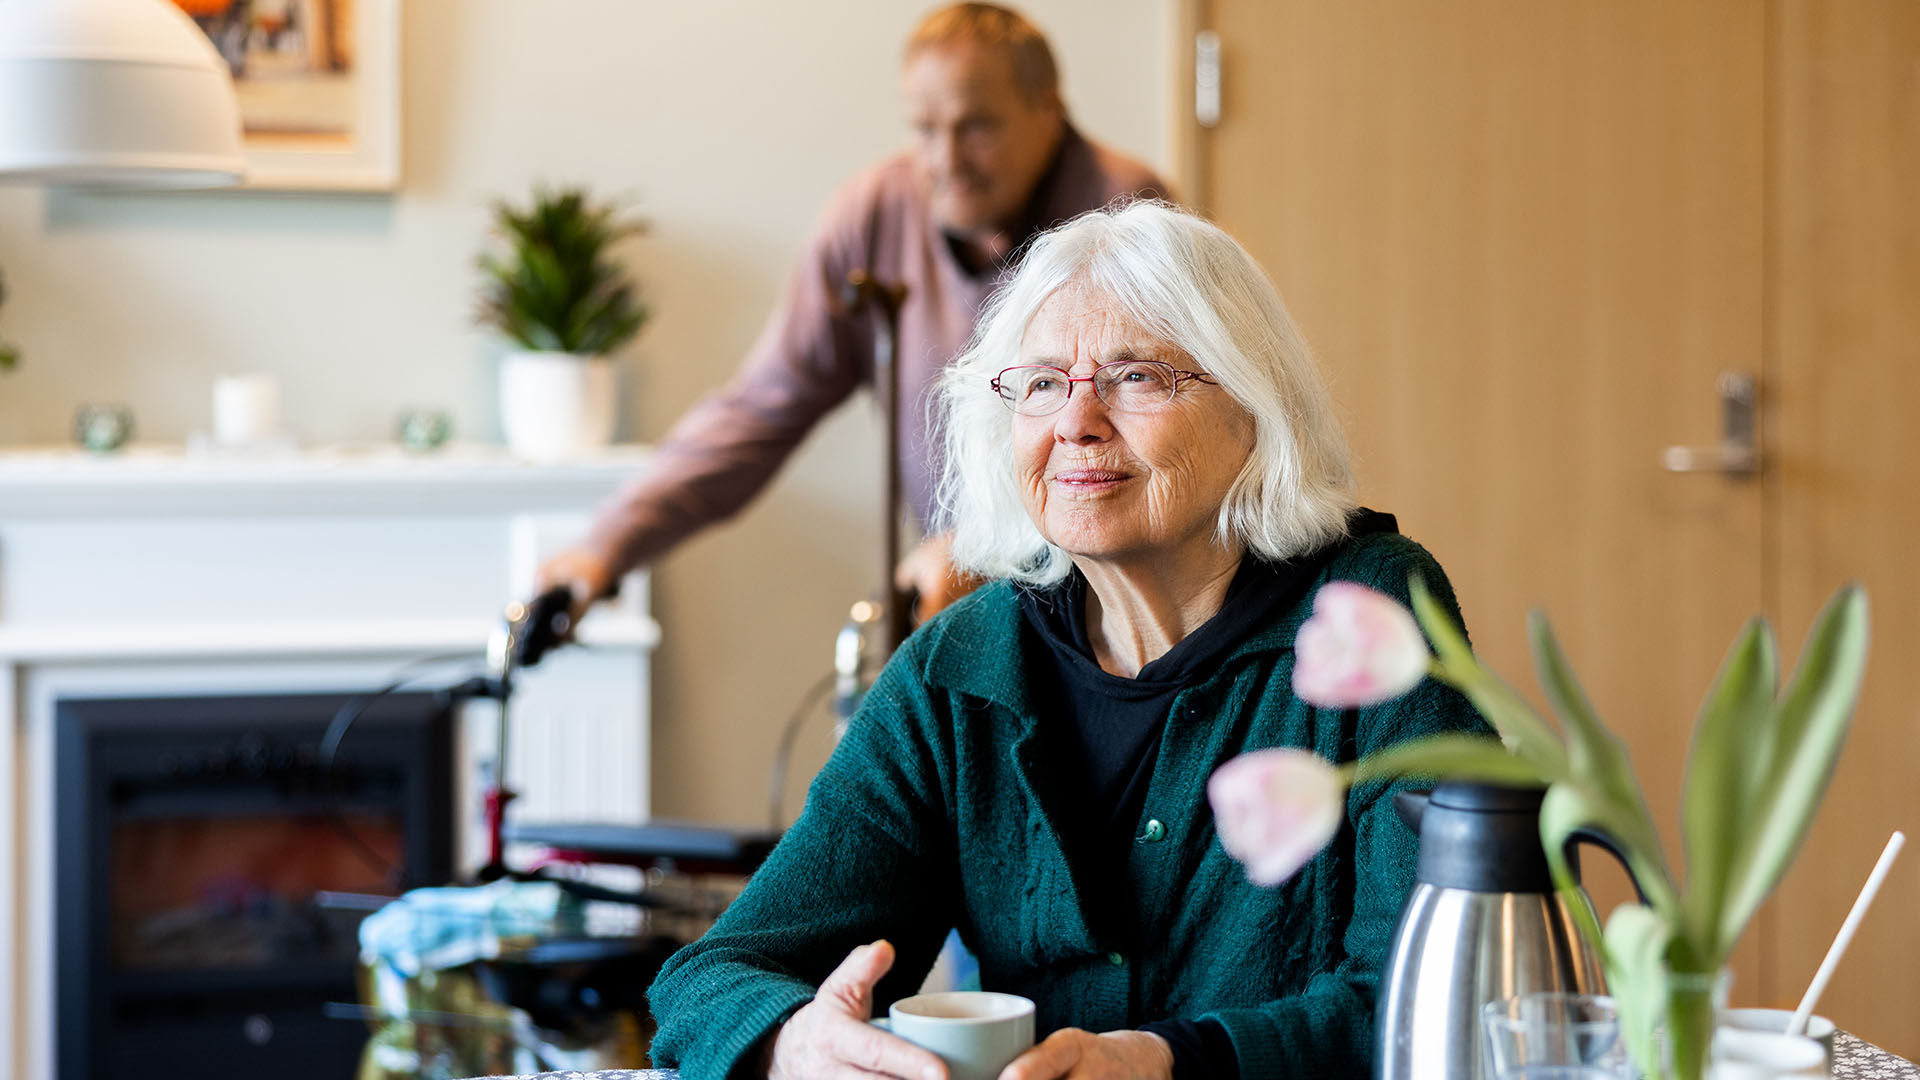 äldre kvinna sitter vid ett bord och tittar snett framåt, en äldre man i bakgrunden, en kaffekopp och tulpaner på bordet